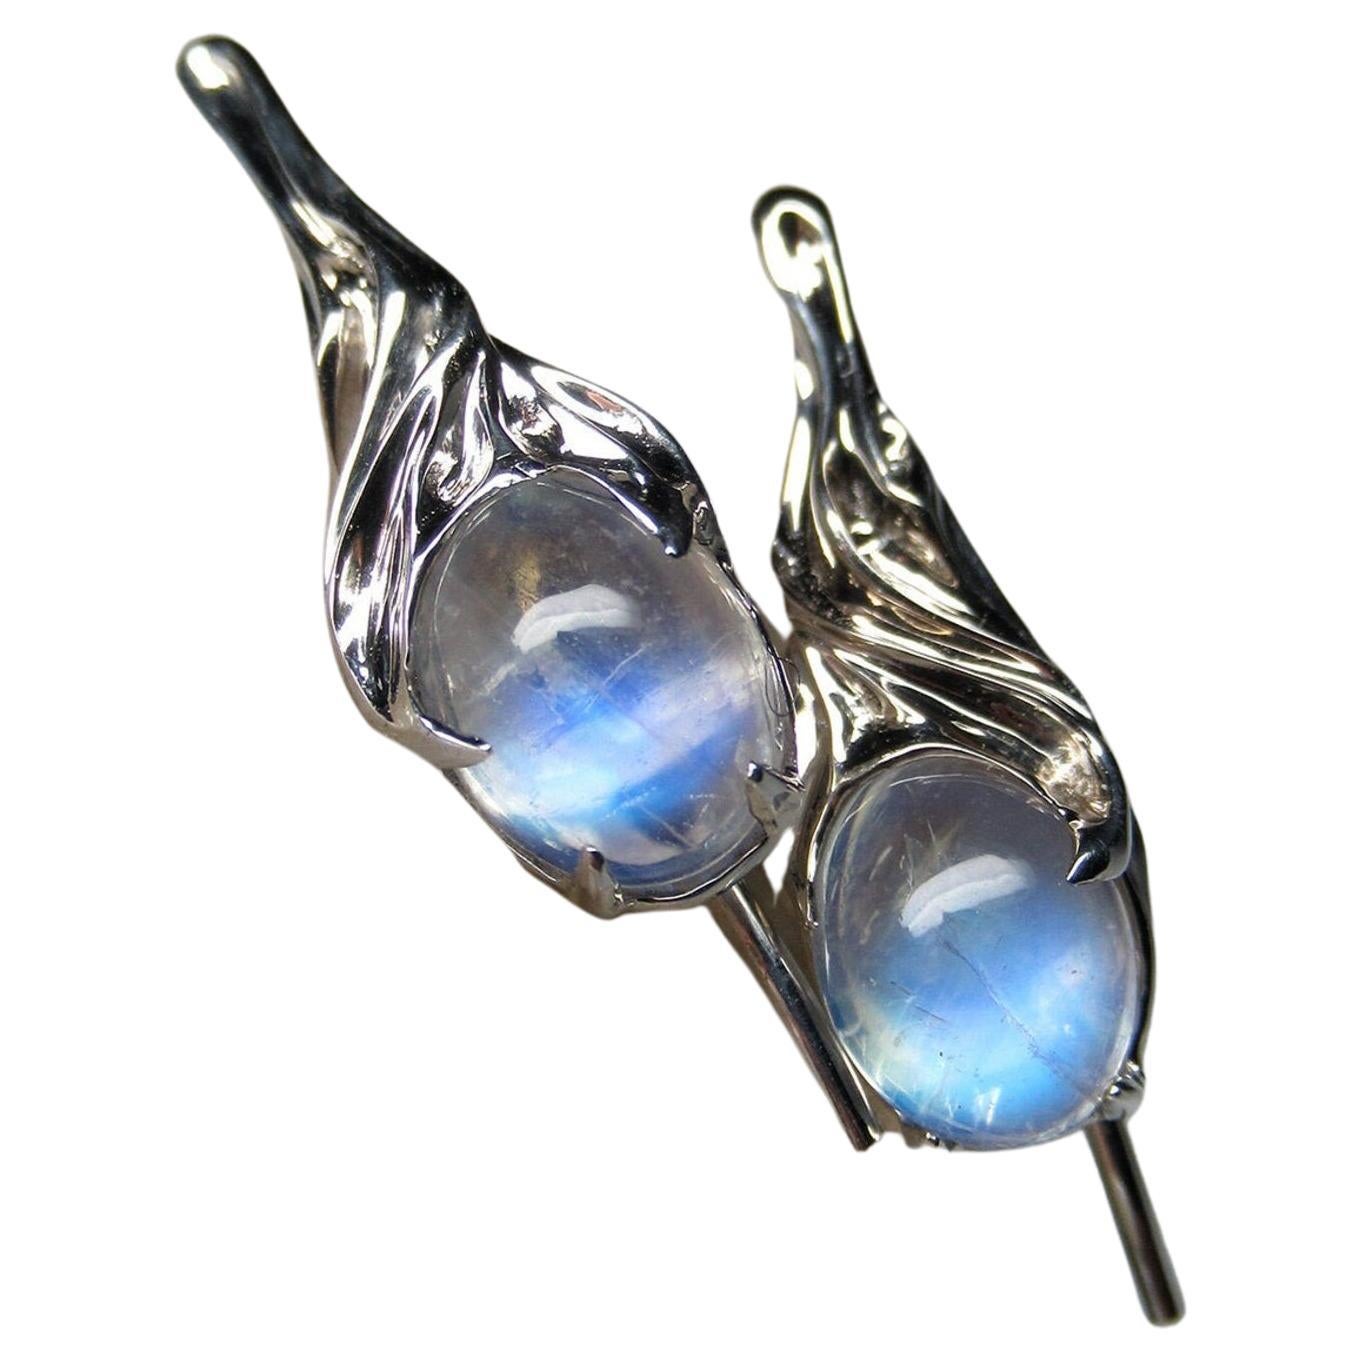 https://a.1stdibscdn.com/moonstone-silver-earrings-natural-moonstone-gemstone-unisex-lotr-style-for-sale/j_20322/j_205202721696229876642/j_20520272_1696229877050_bg_processed.jpg